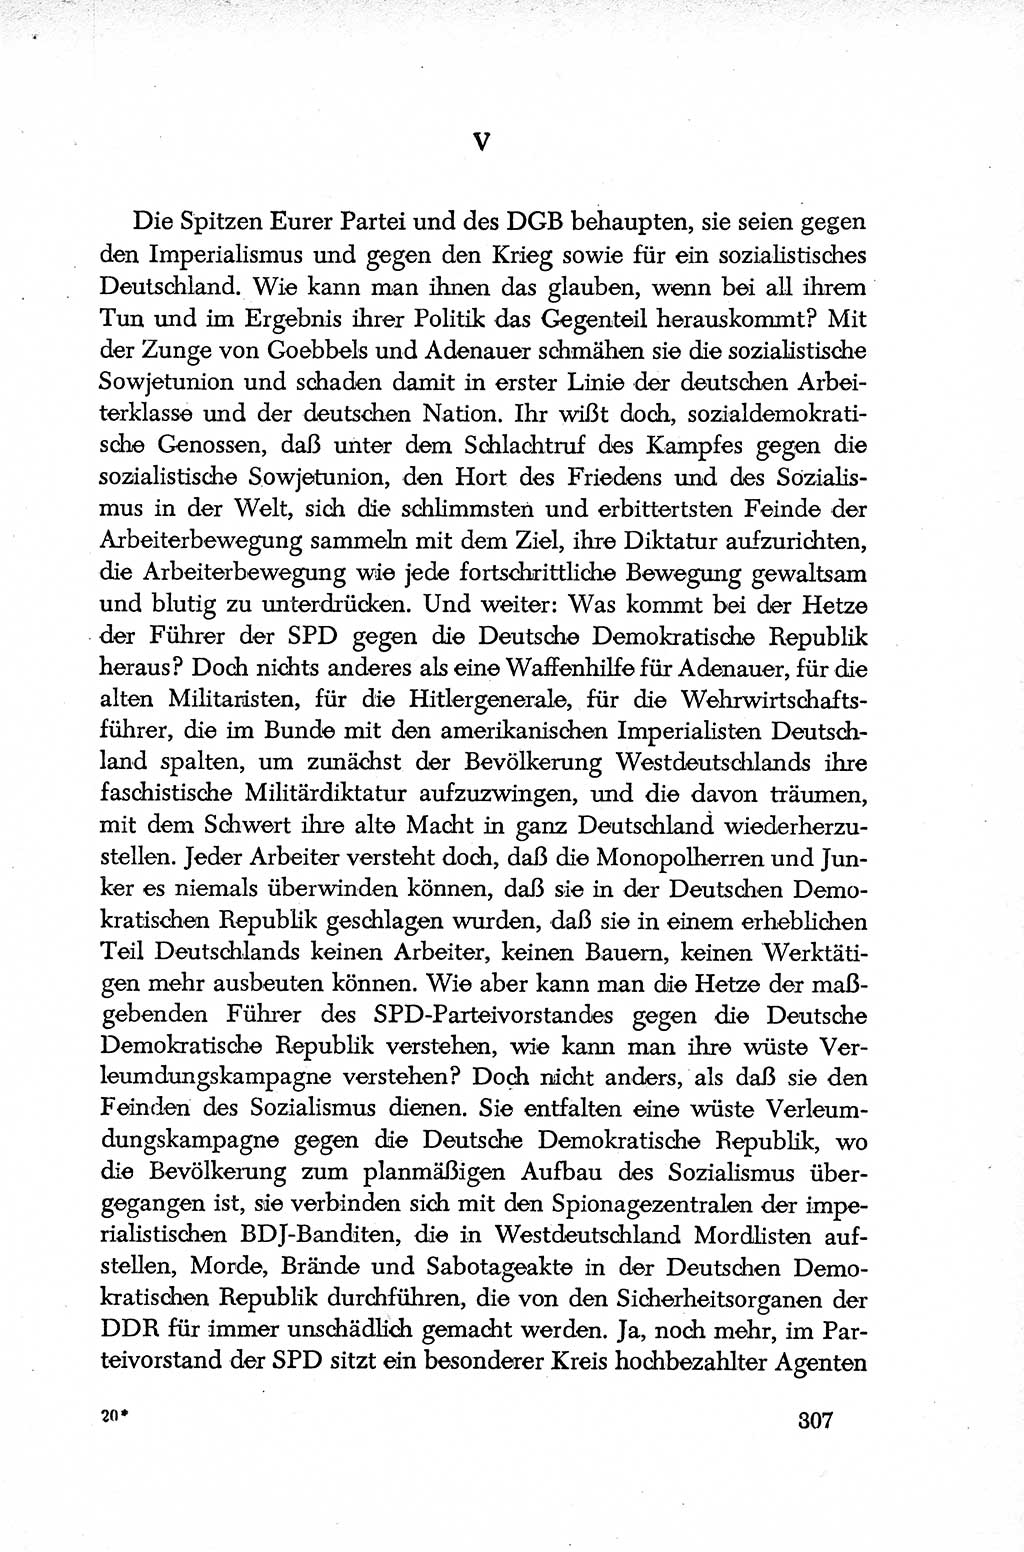 Dokumente der Sozialistischen Einheitspartei Deutschlands (SED) [Deutsche Demokratische Republik (DDR)] 1952-1953, Seite 307 (Dok. SED DDR 1952-1953, S. 307)